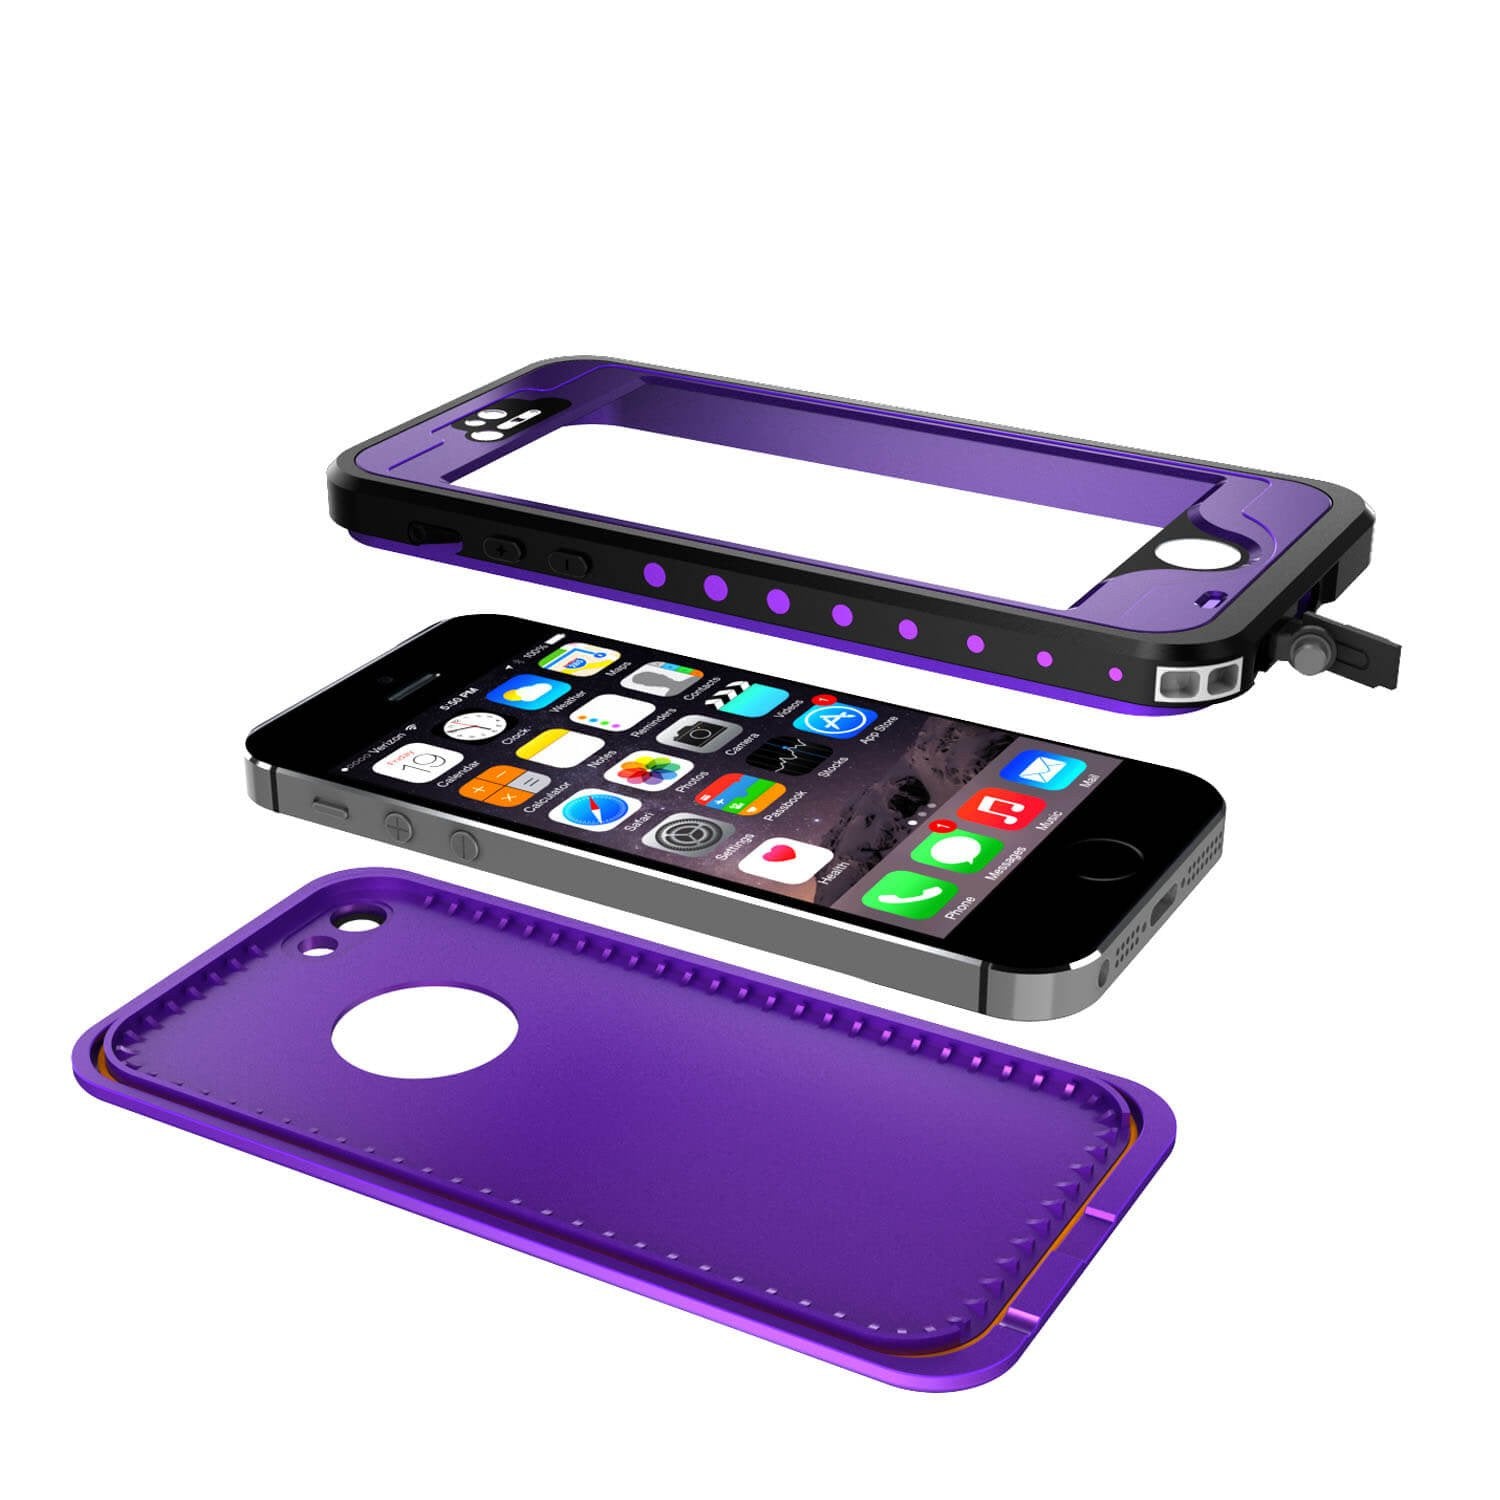 iPhone 5S/5 Waterproof Case PunkCase StudStar Purple Case Water/Shock/Dirt Proof | Lifetime Warranty